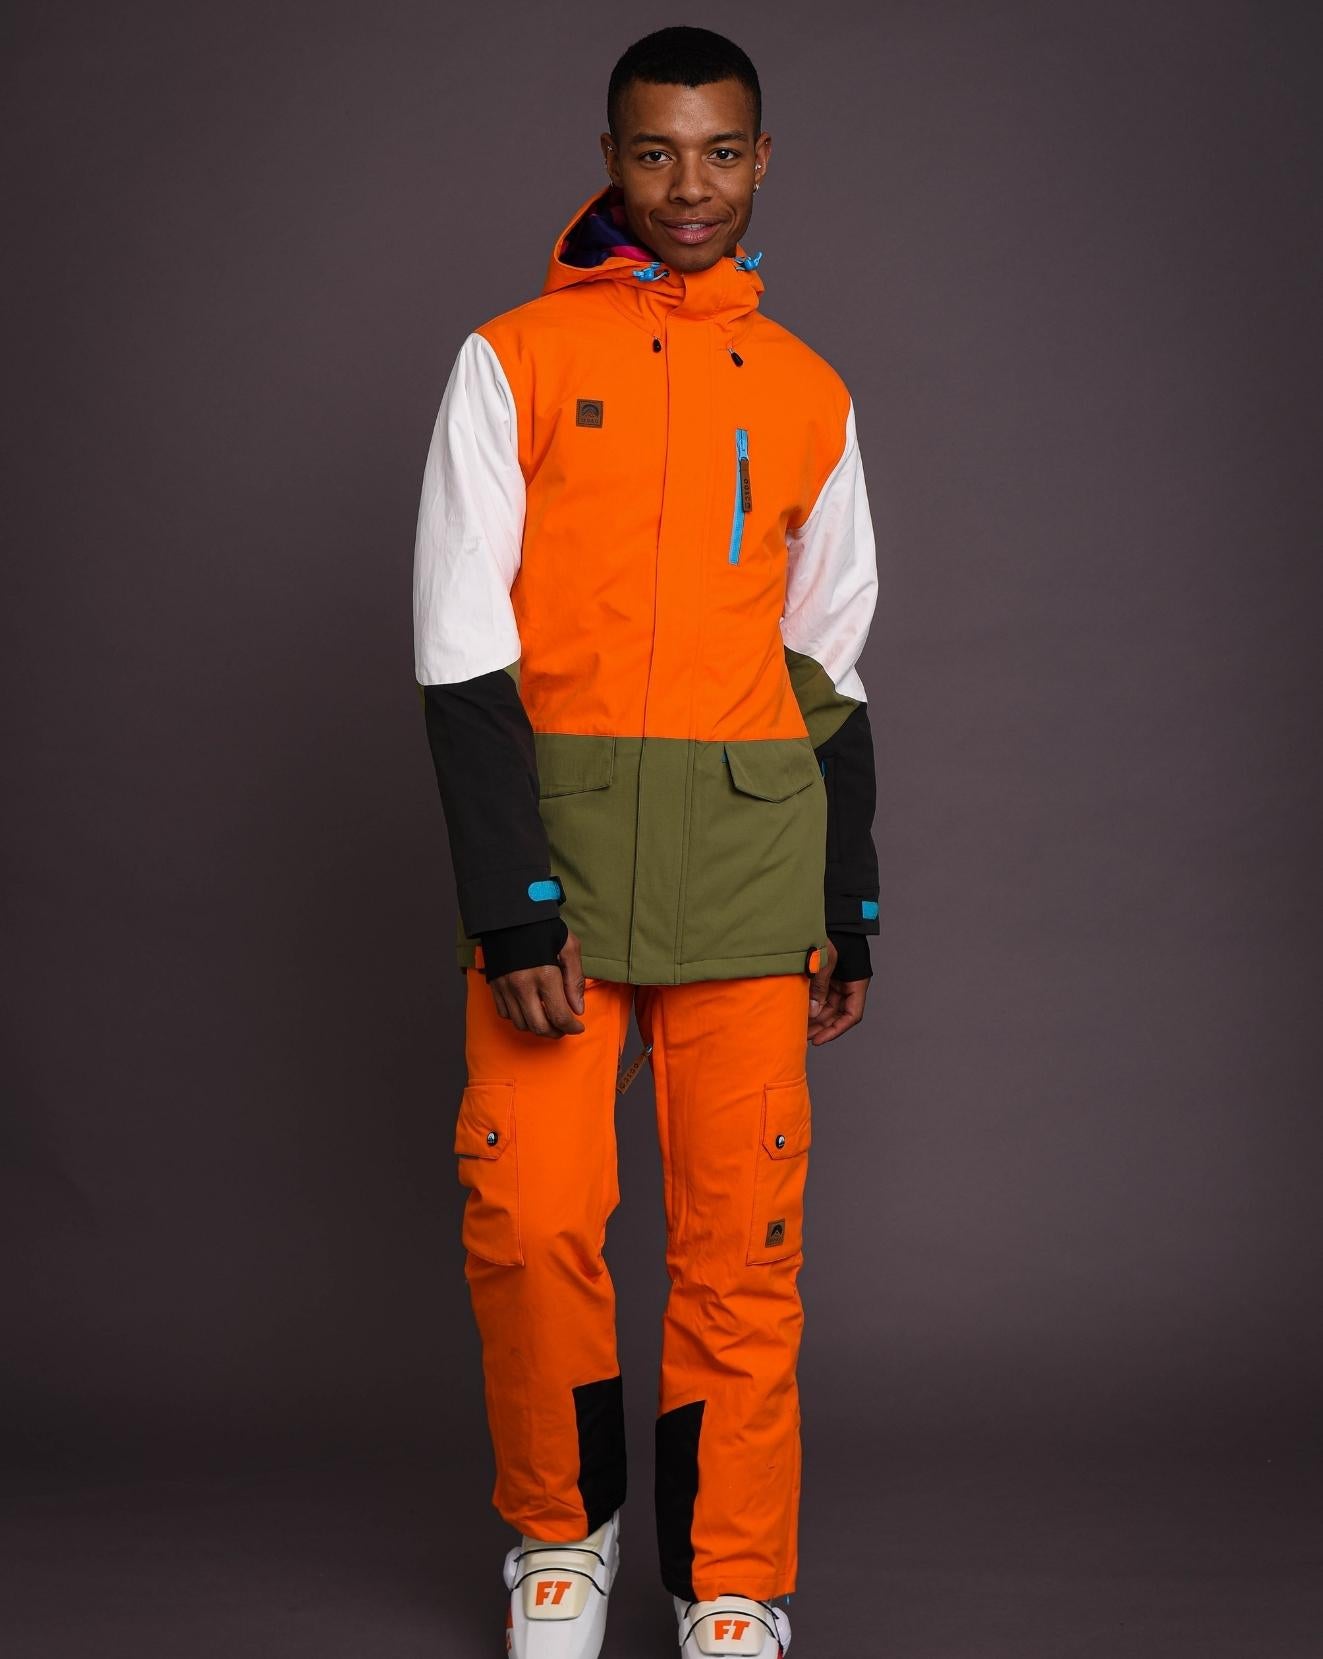 Yeh Man Men's Ski & Snowboard Jacket - Orange, Khaki & White